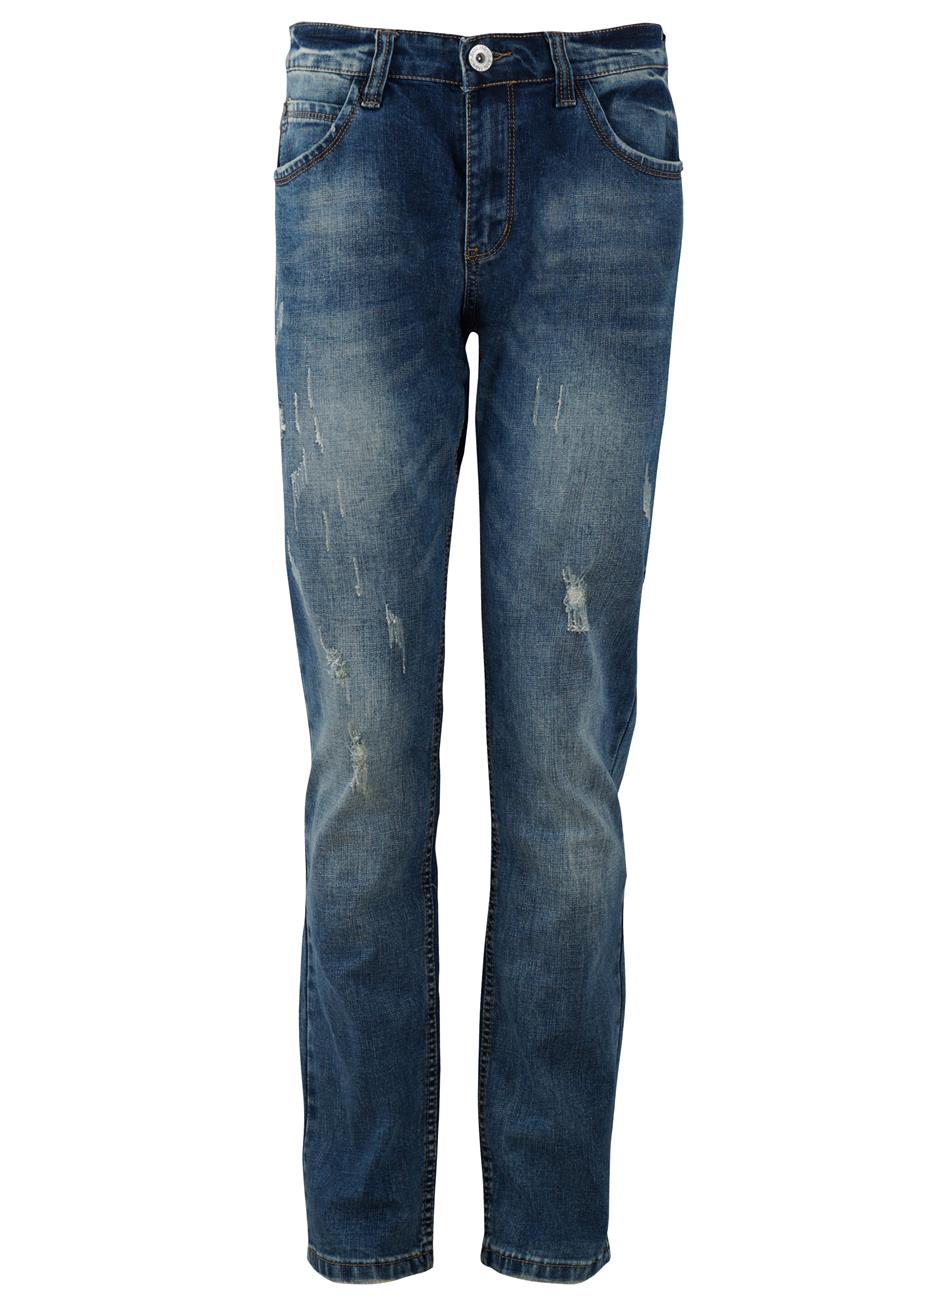 Αντρικό παντελόνι jean used. Denim collection